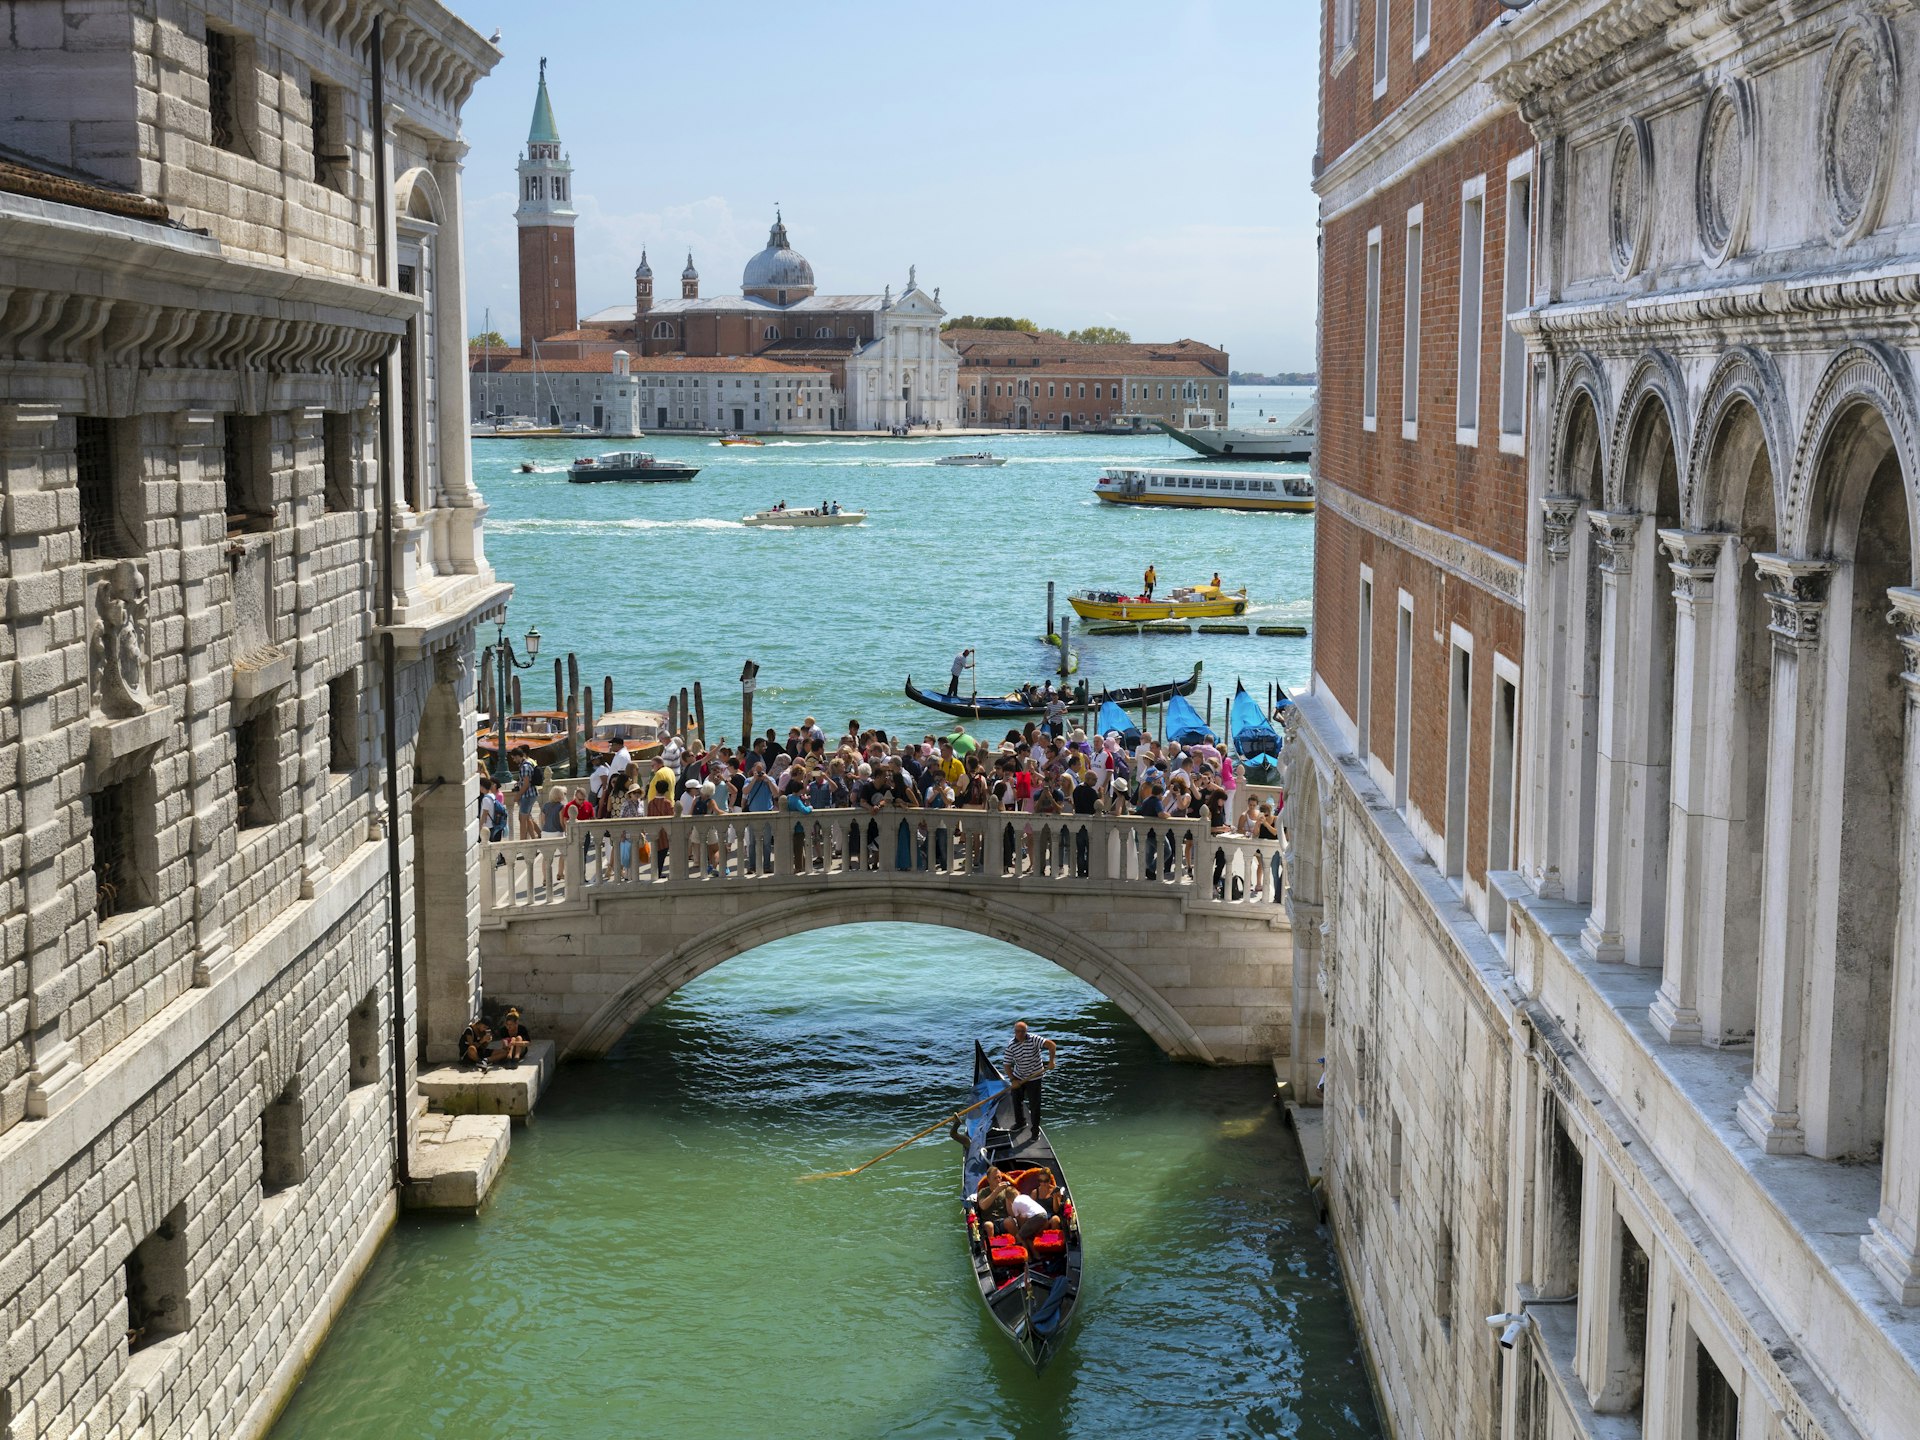 A gondola travels under the crowded Ponte della Paglia bridge in Venice